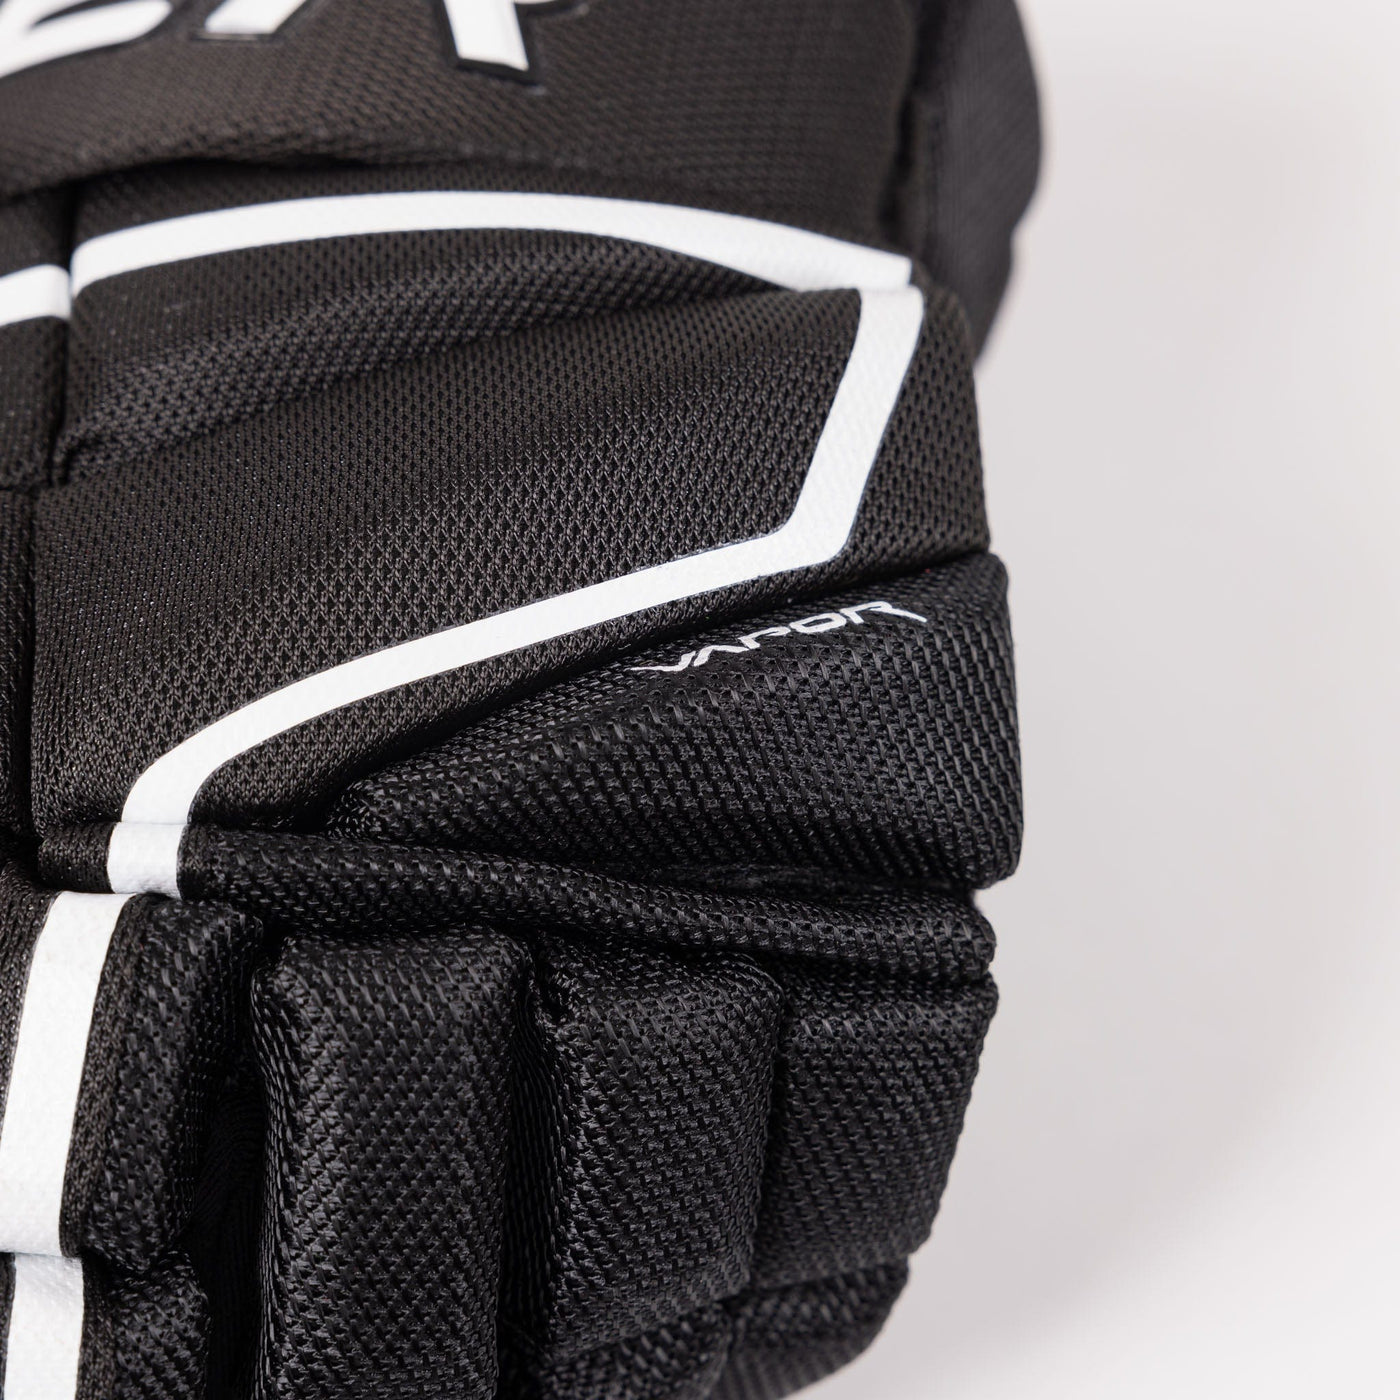 Bauer Vapor Hyperlite Junior Hockey Gloves - The Hockey Shop Source For Sports